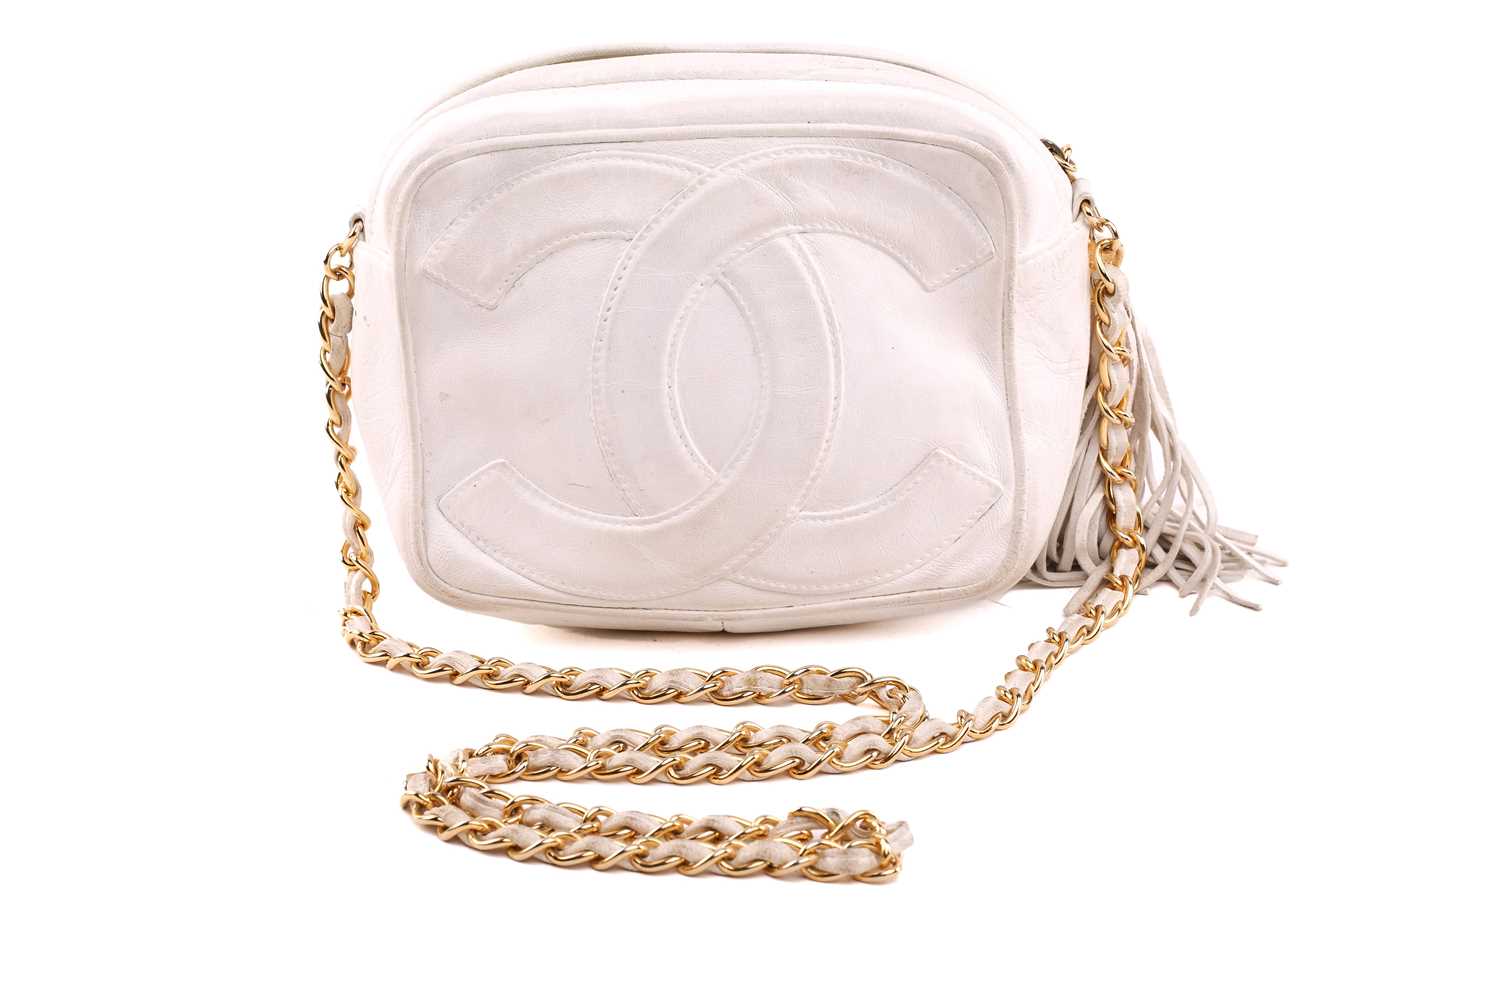 Chanel - a mini camera bag in white leather, circa 1986, interlocking 'CC' logo appliqué on the - Image 3 of 9